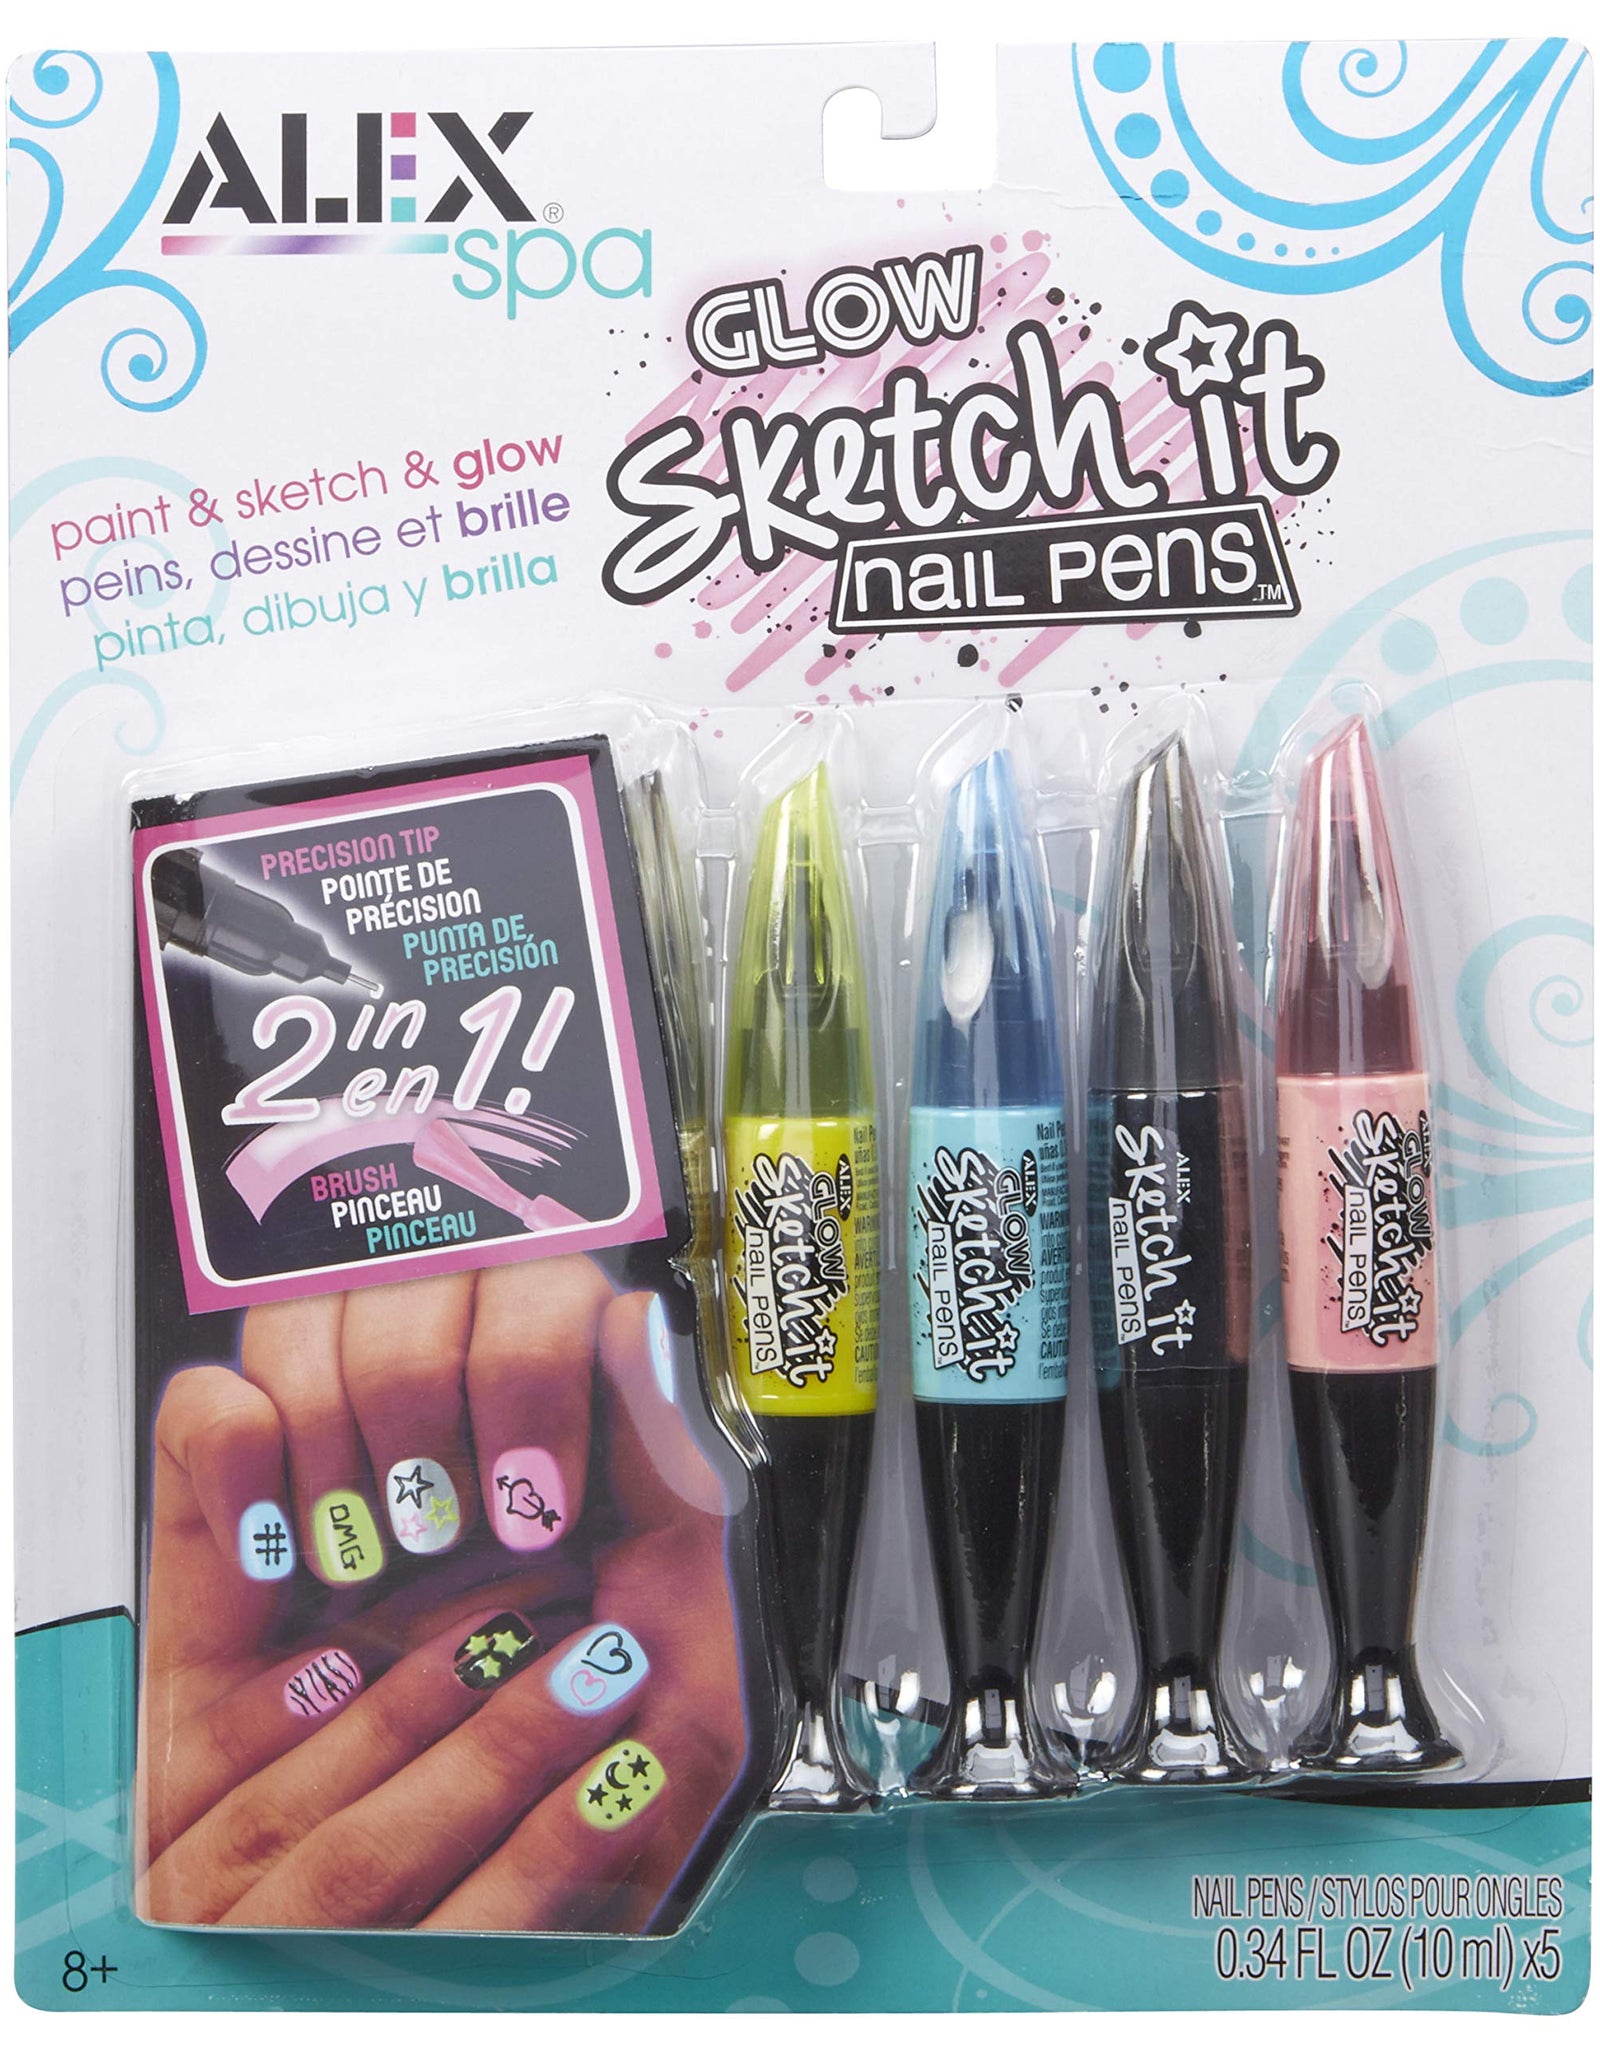 Alex Spa Glow Sketch It Nail Pens Girls Fashion Activity